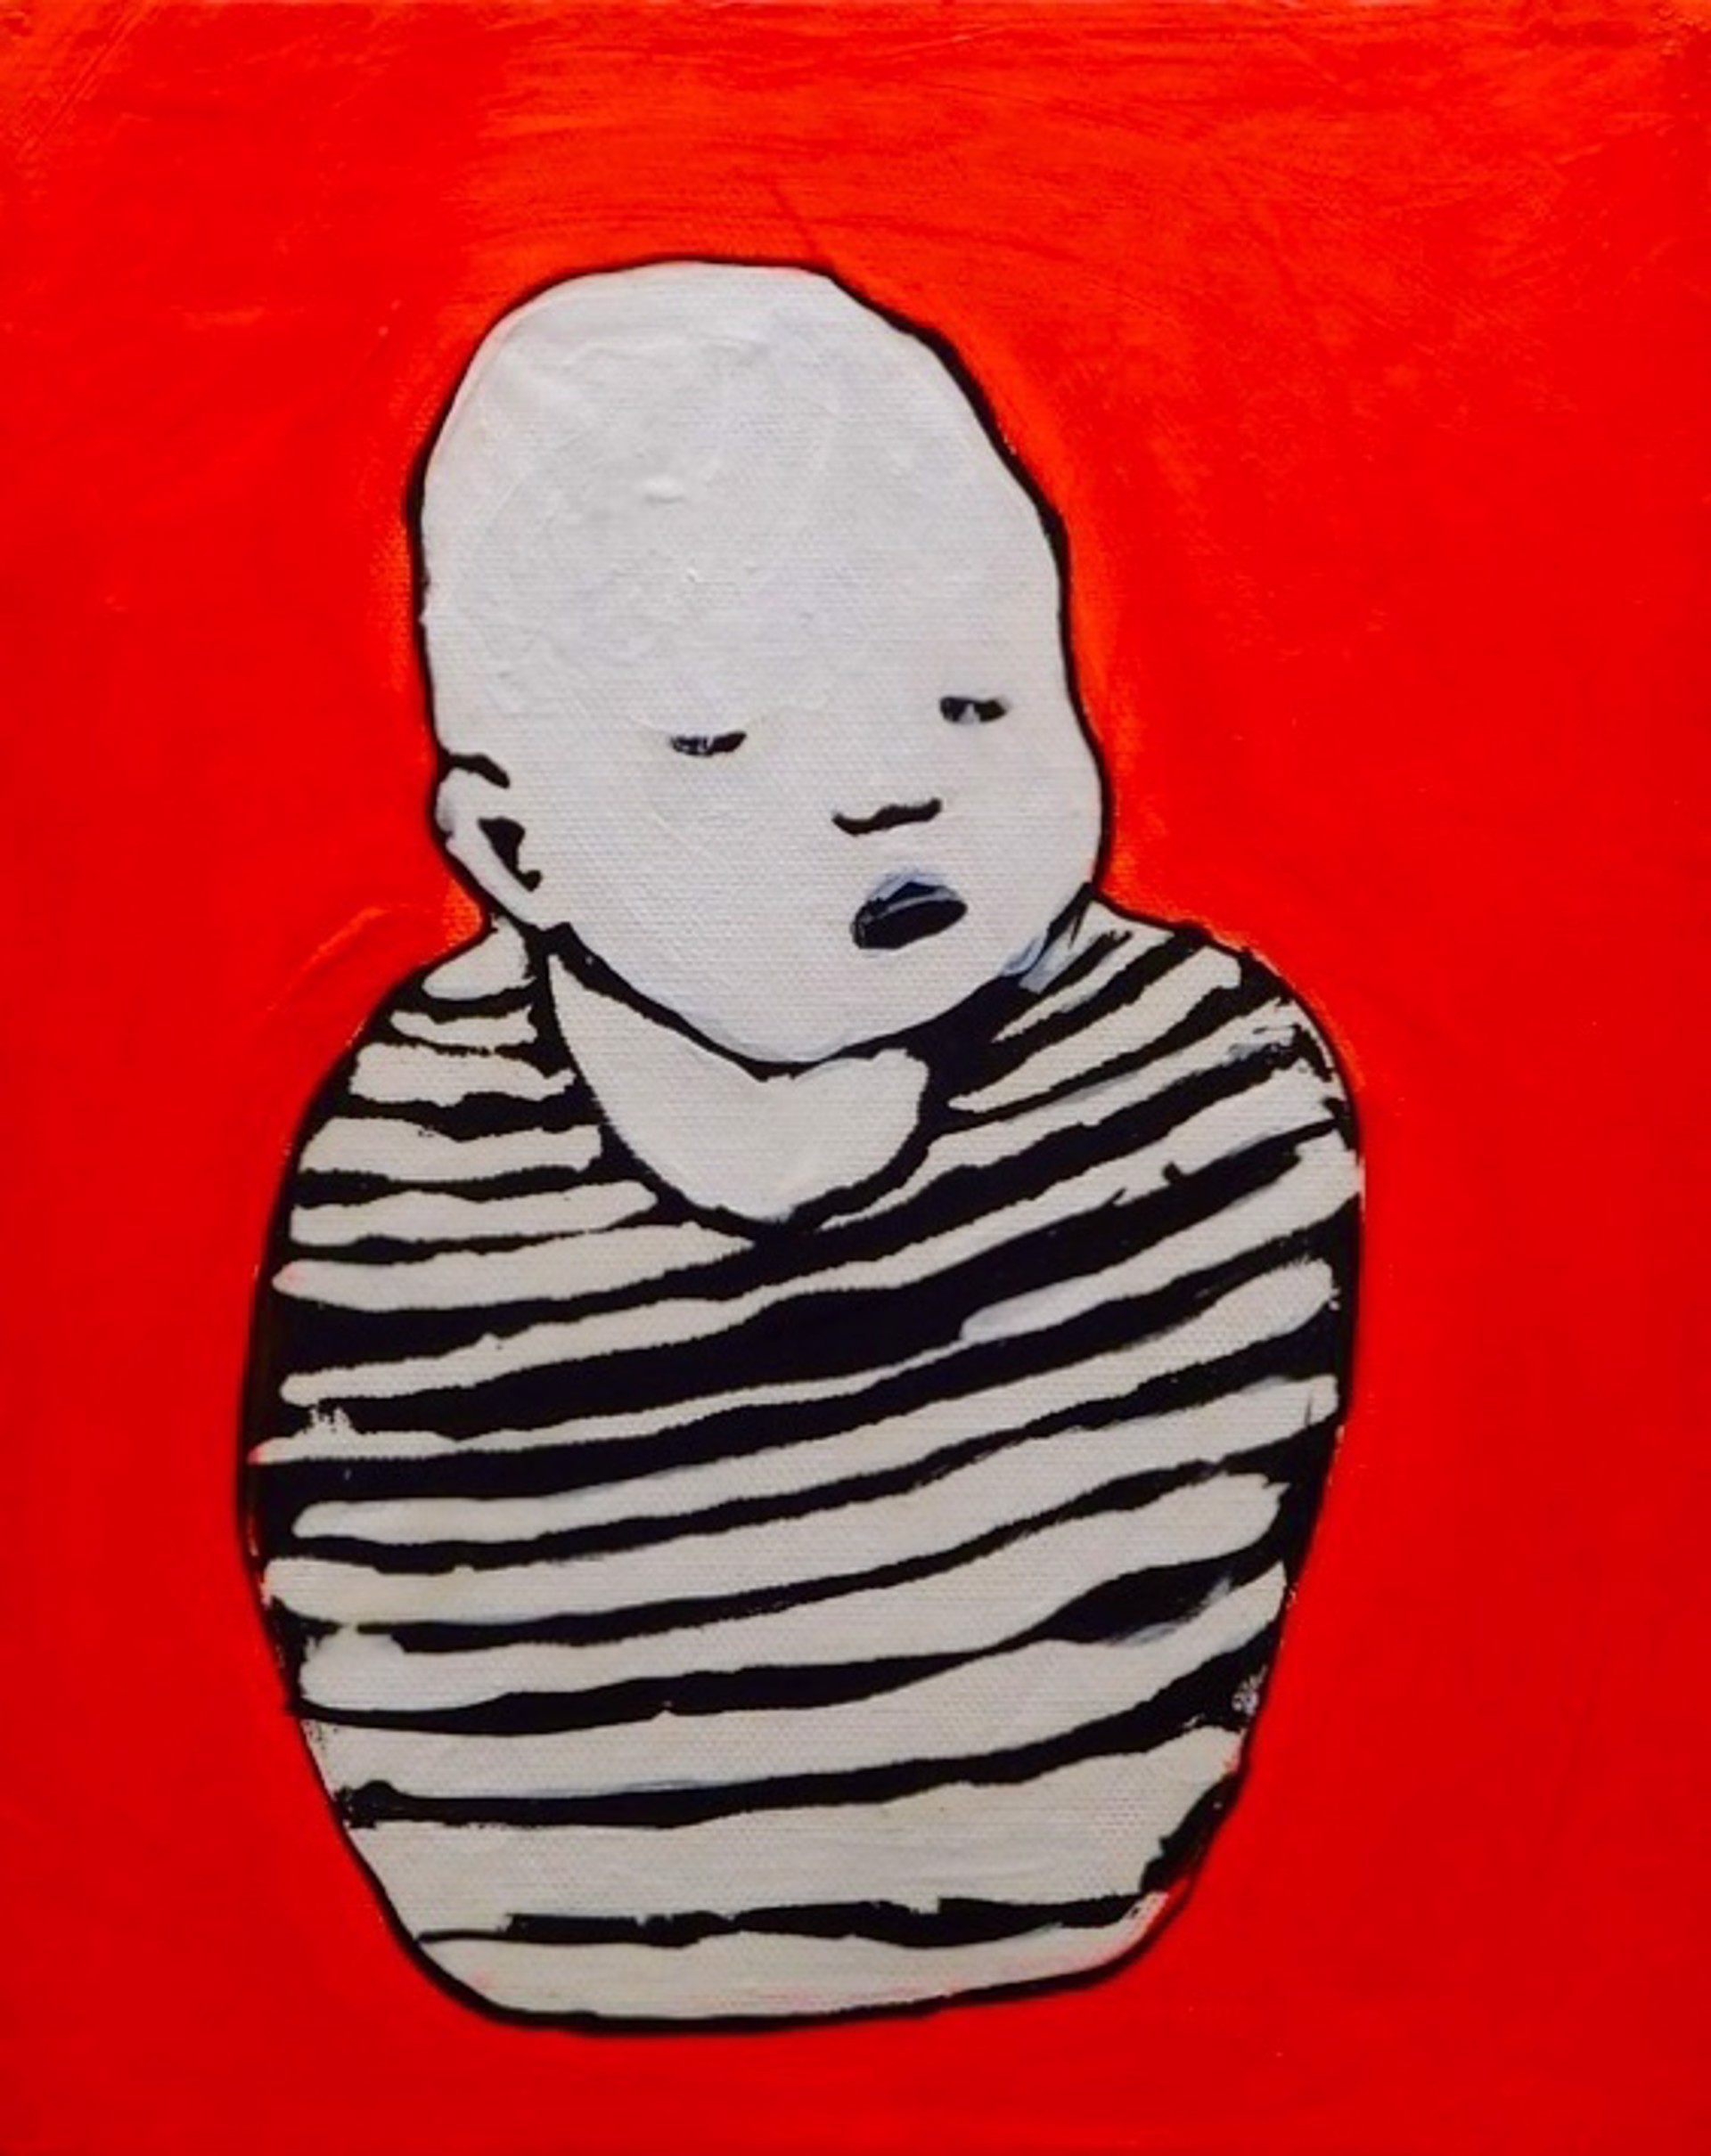 Prisoner Baby by Brian Leo